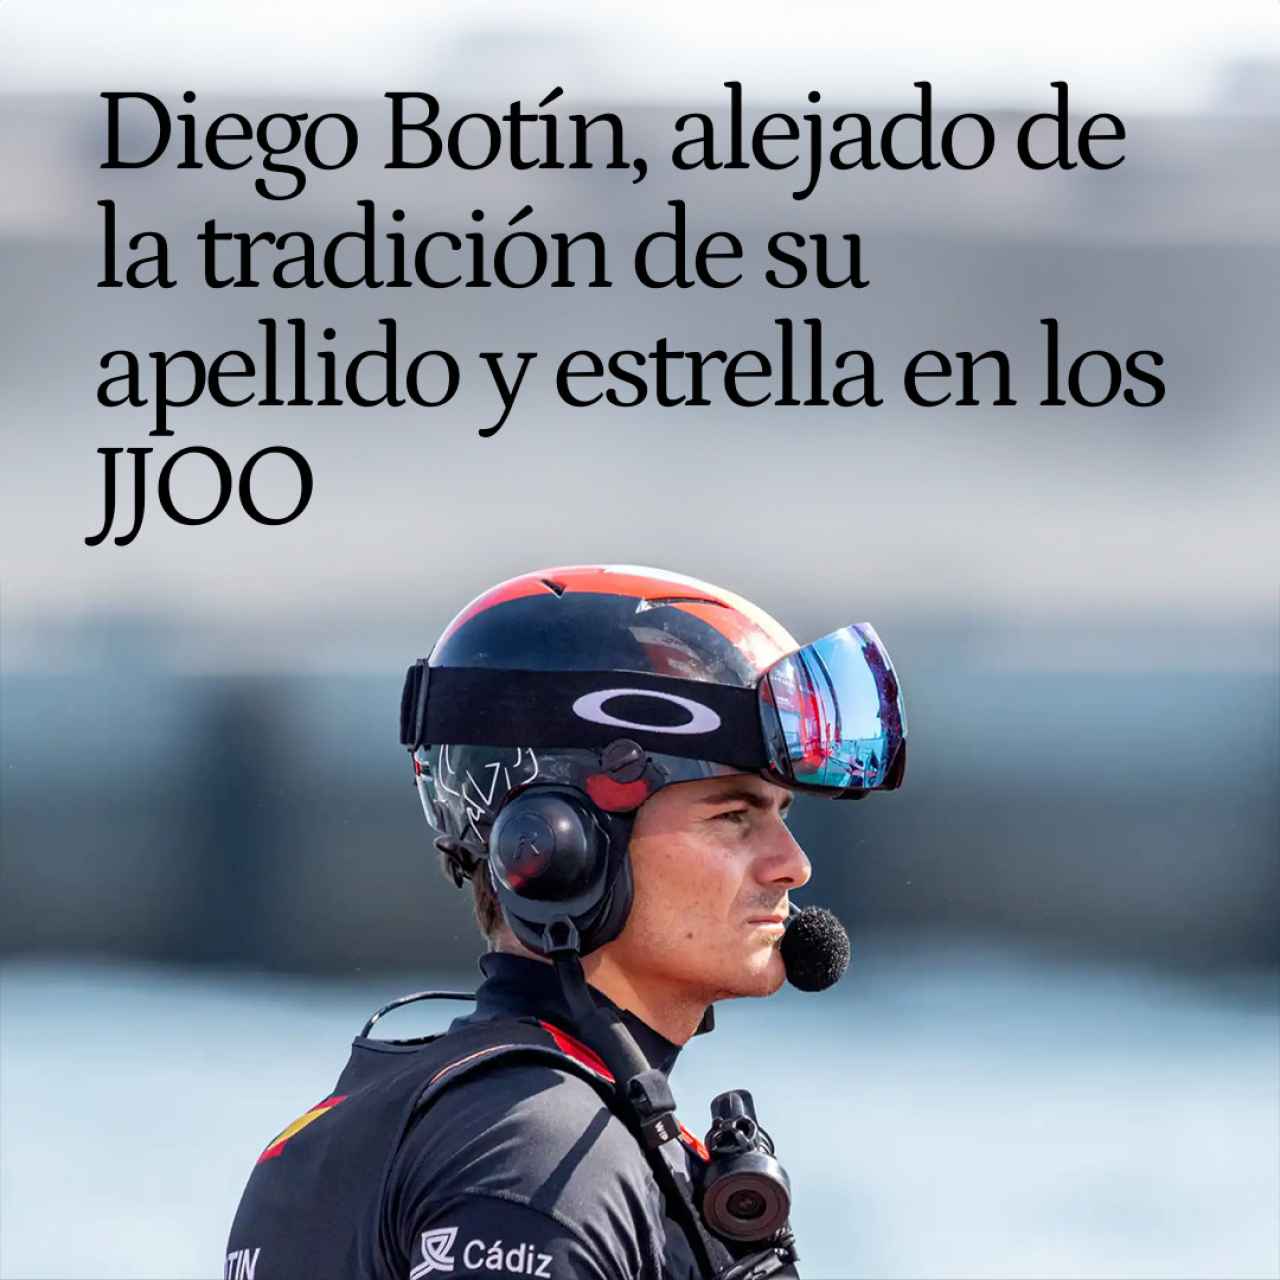 Diego Botín, alejado de la tradición de su apellido y estrella española en los JJOO: "Vamos a por el oro"